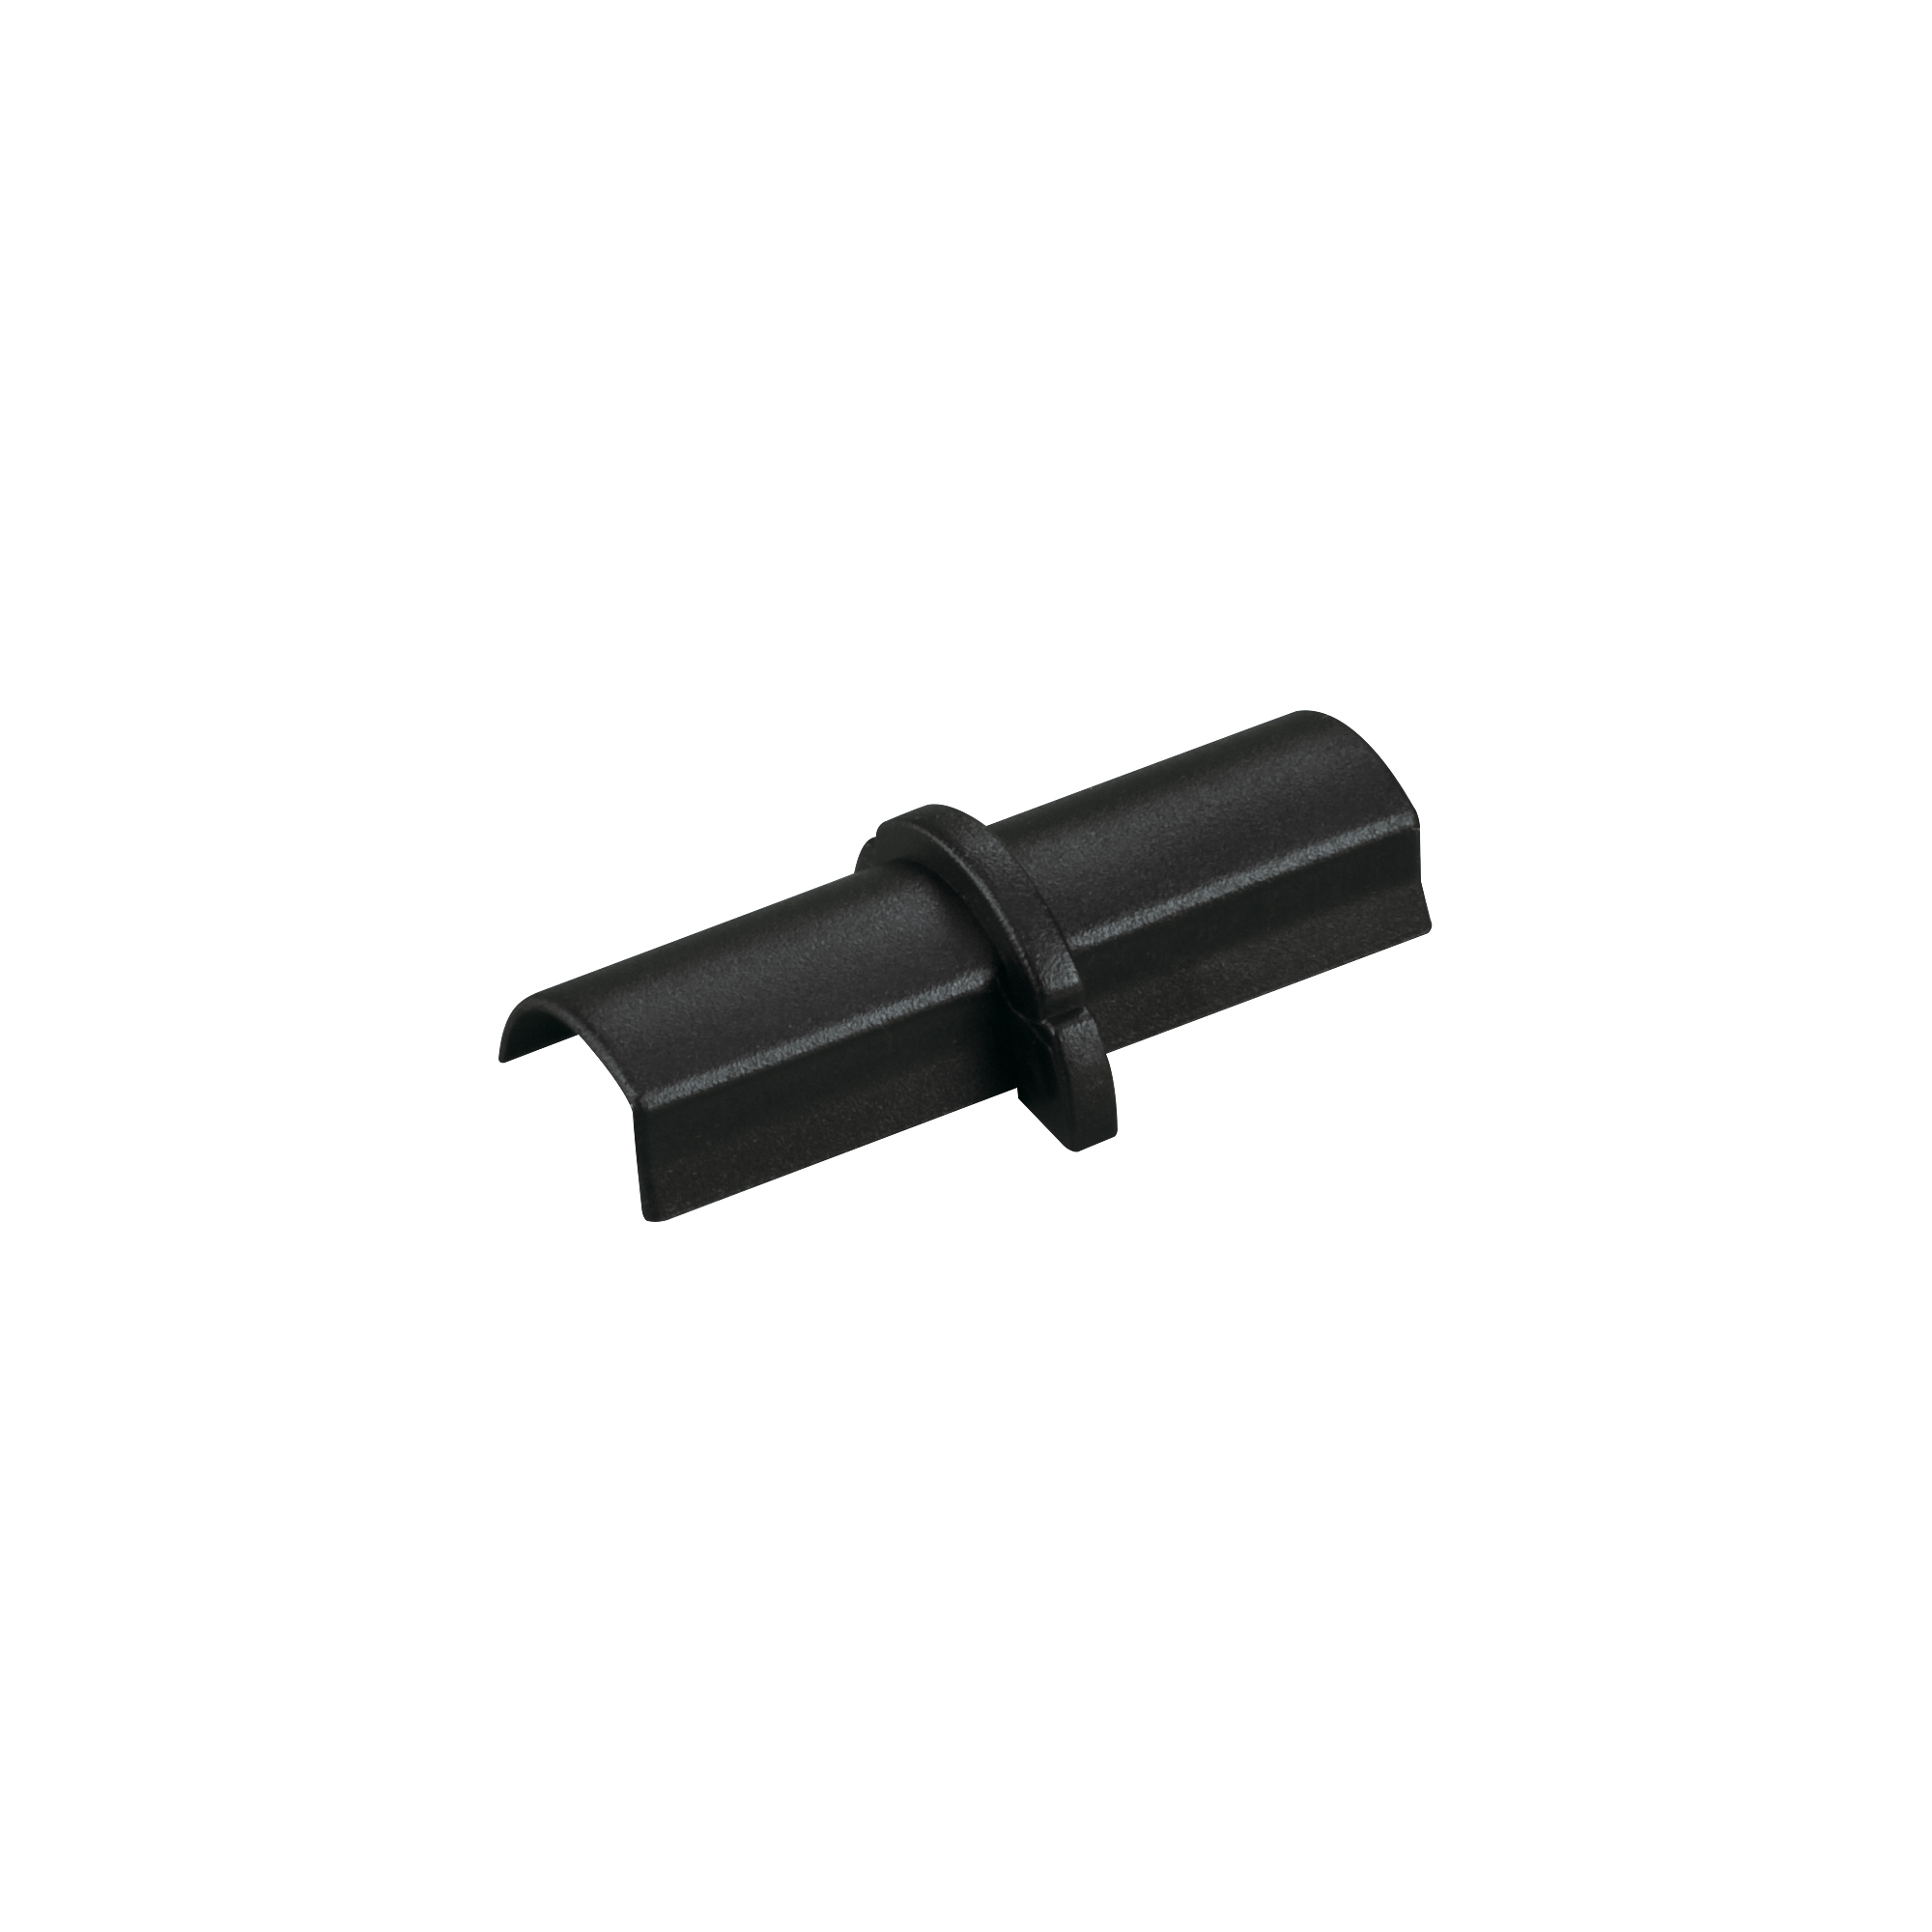 Goulotte décorative demi-ronde noire auto-adhésive D-Line 30x15mm, 2m